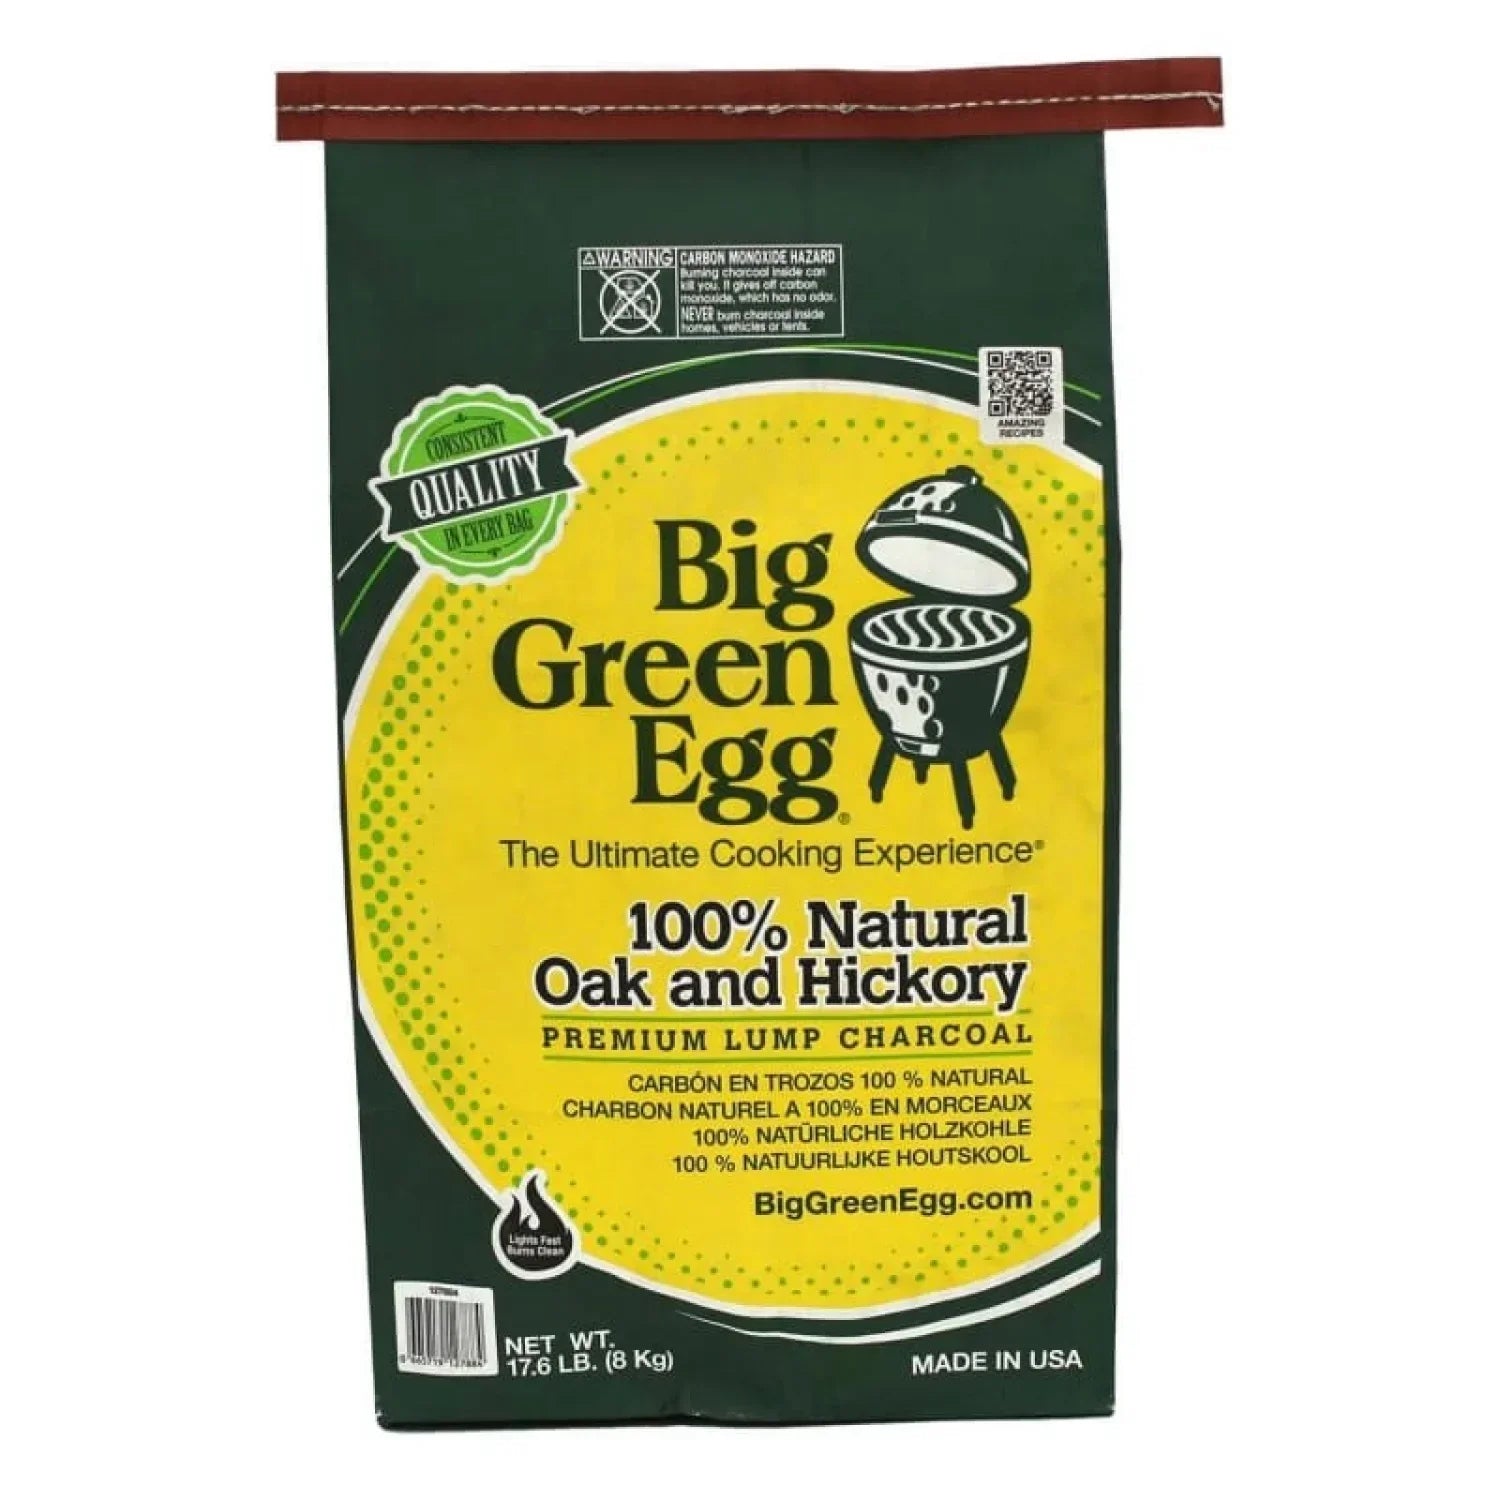 Big Green Egg 14. GRILLING - BIG GREEN EGGCESSORIES - BIG GREEN EGGCESSORIES 100% Natural Lump Charcoal - 17.6 lb